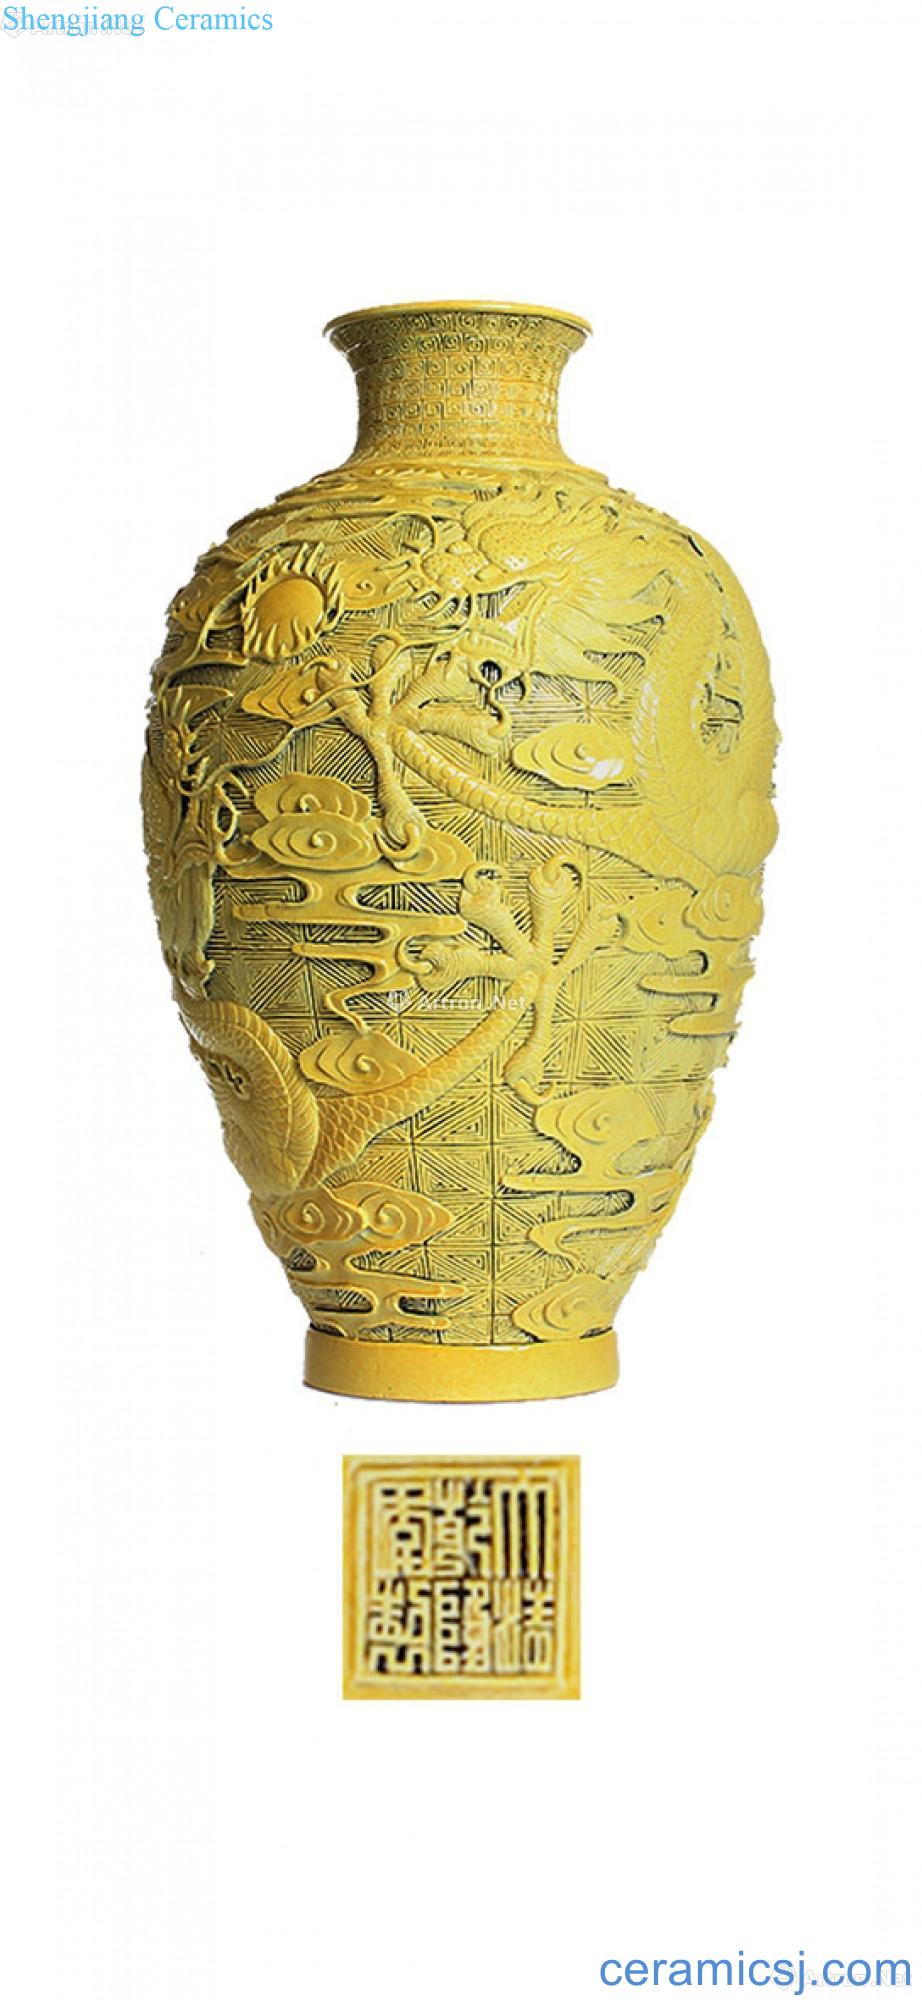 Qianlong yellow glaze depicting the dragon grain design